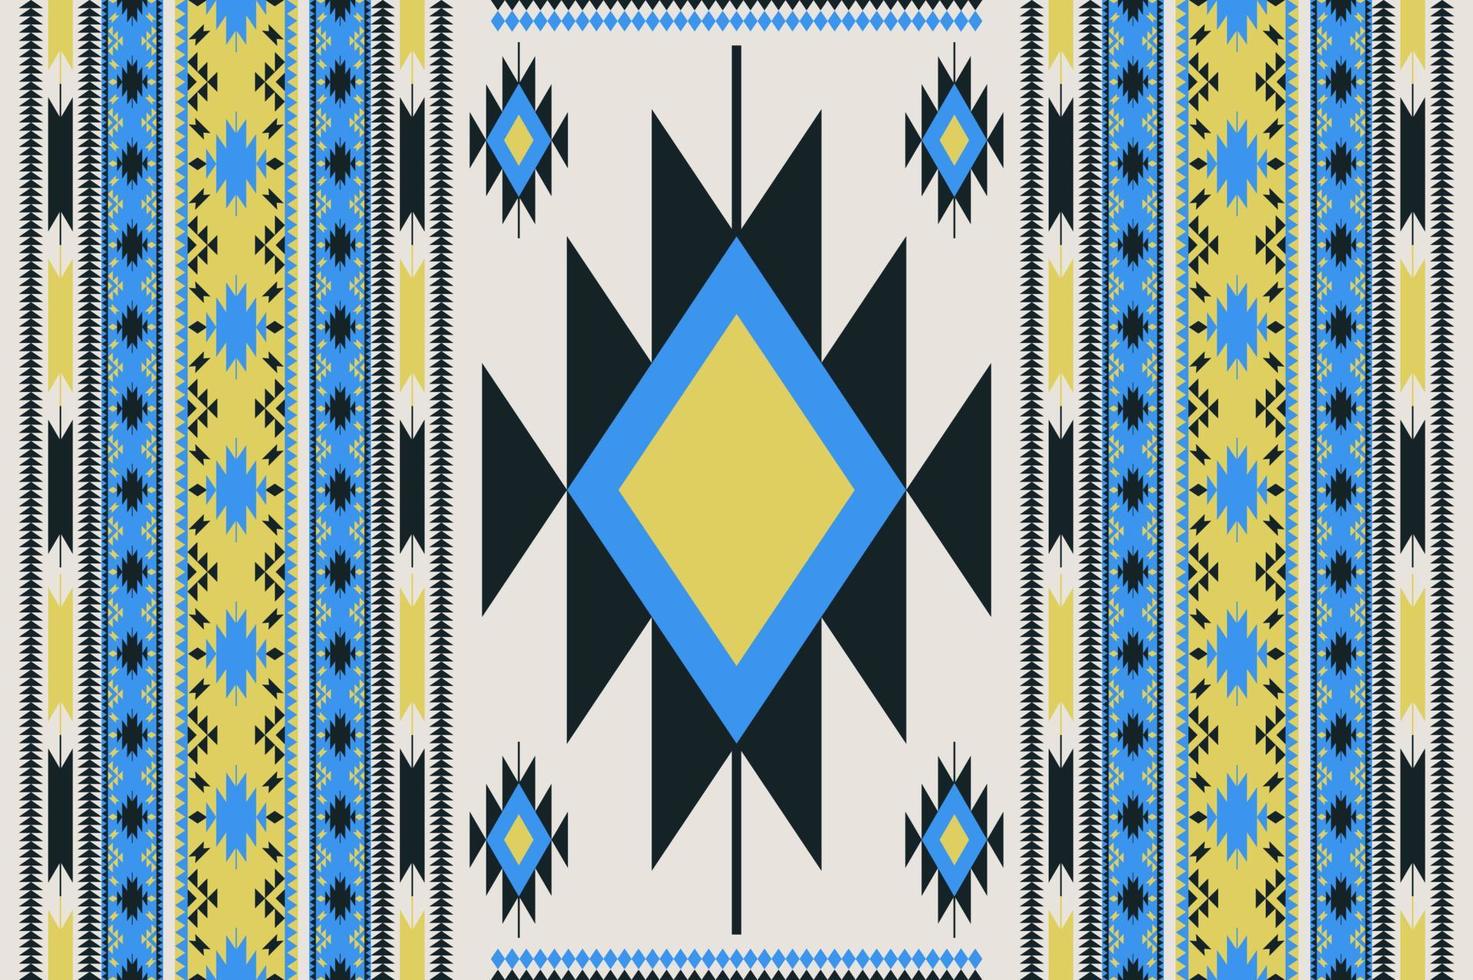 etnisch Navajo naadloos patroon. kleurrijk etnisch zuidwesten patroon gebruik voor tapijt, tapijt, tapijtwerk, bekleding, huis decoratie elementen. modern etnisch boho zuidwesten grens strepen kleding stof ontwerp. vector